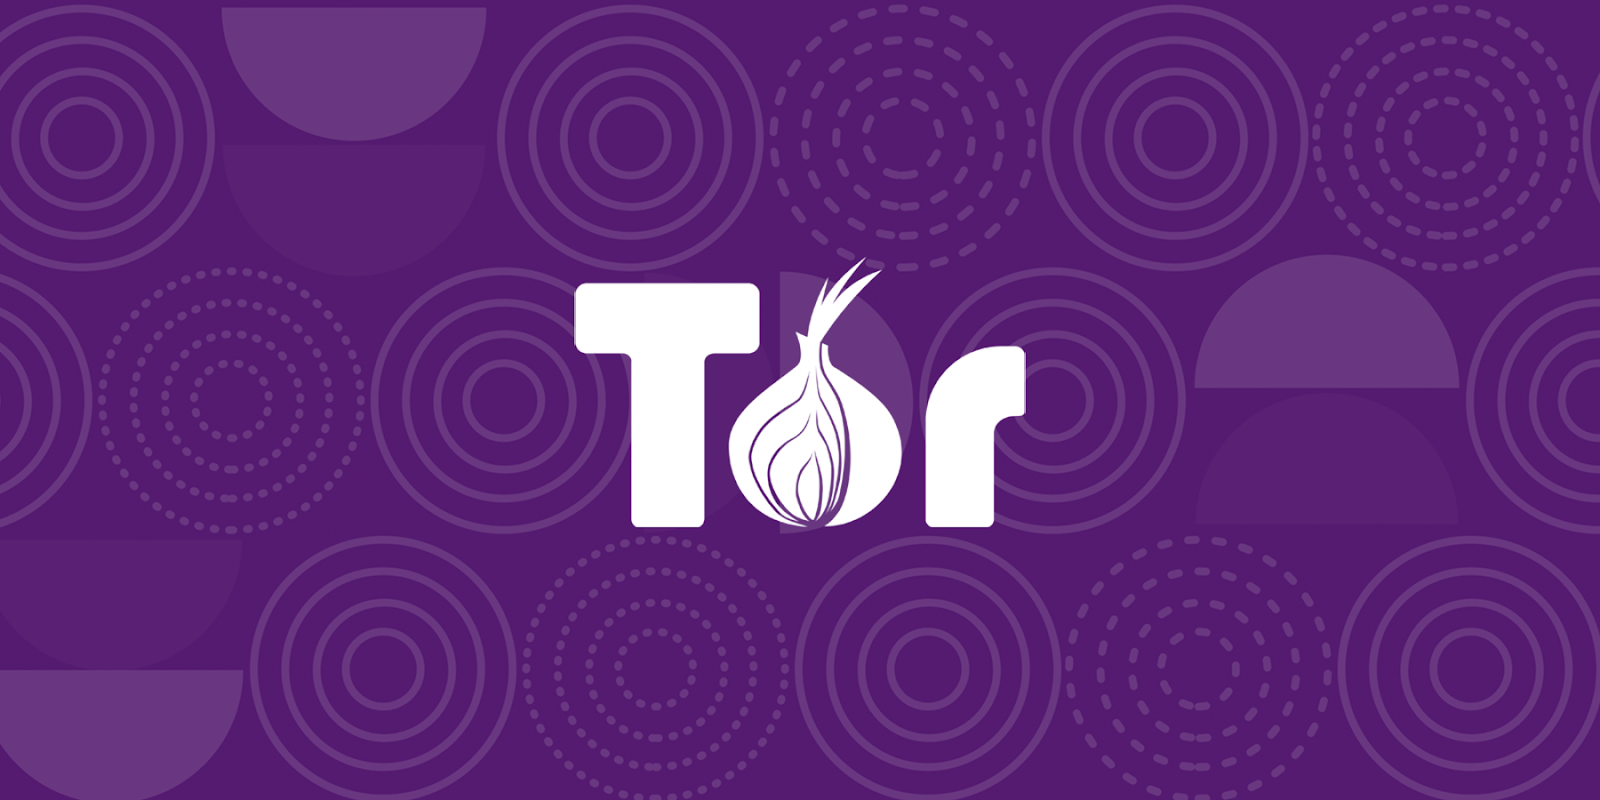 1. Prohlížeč Tor